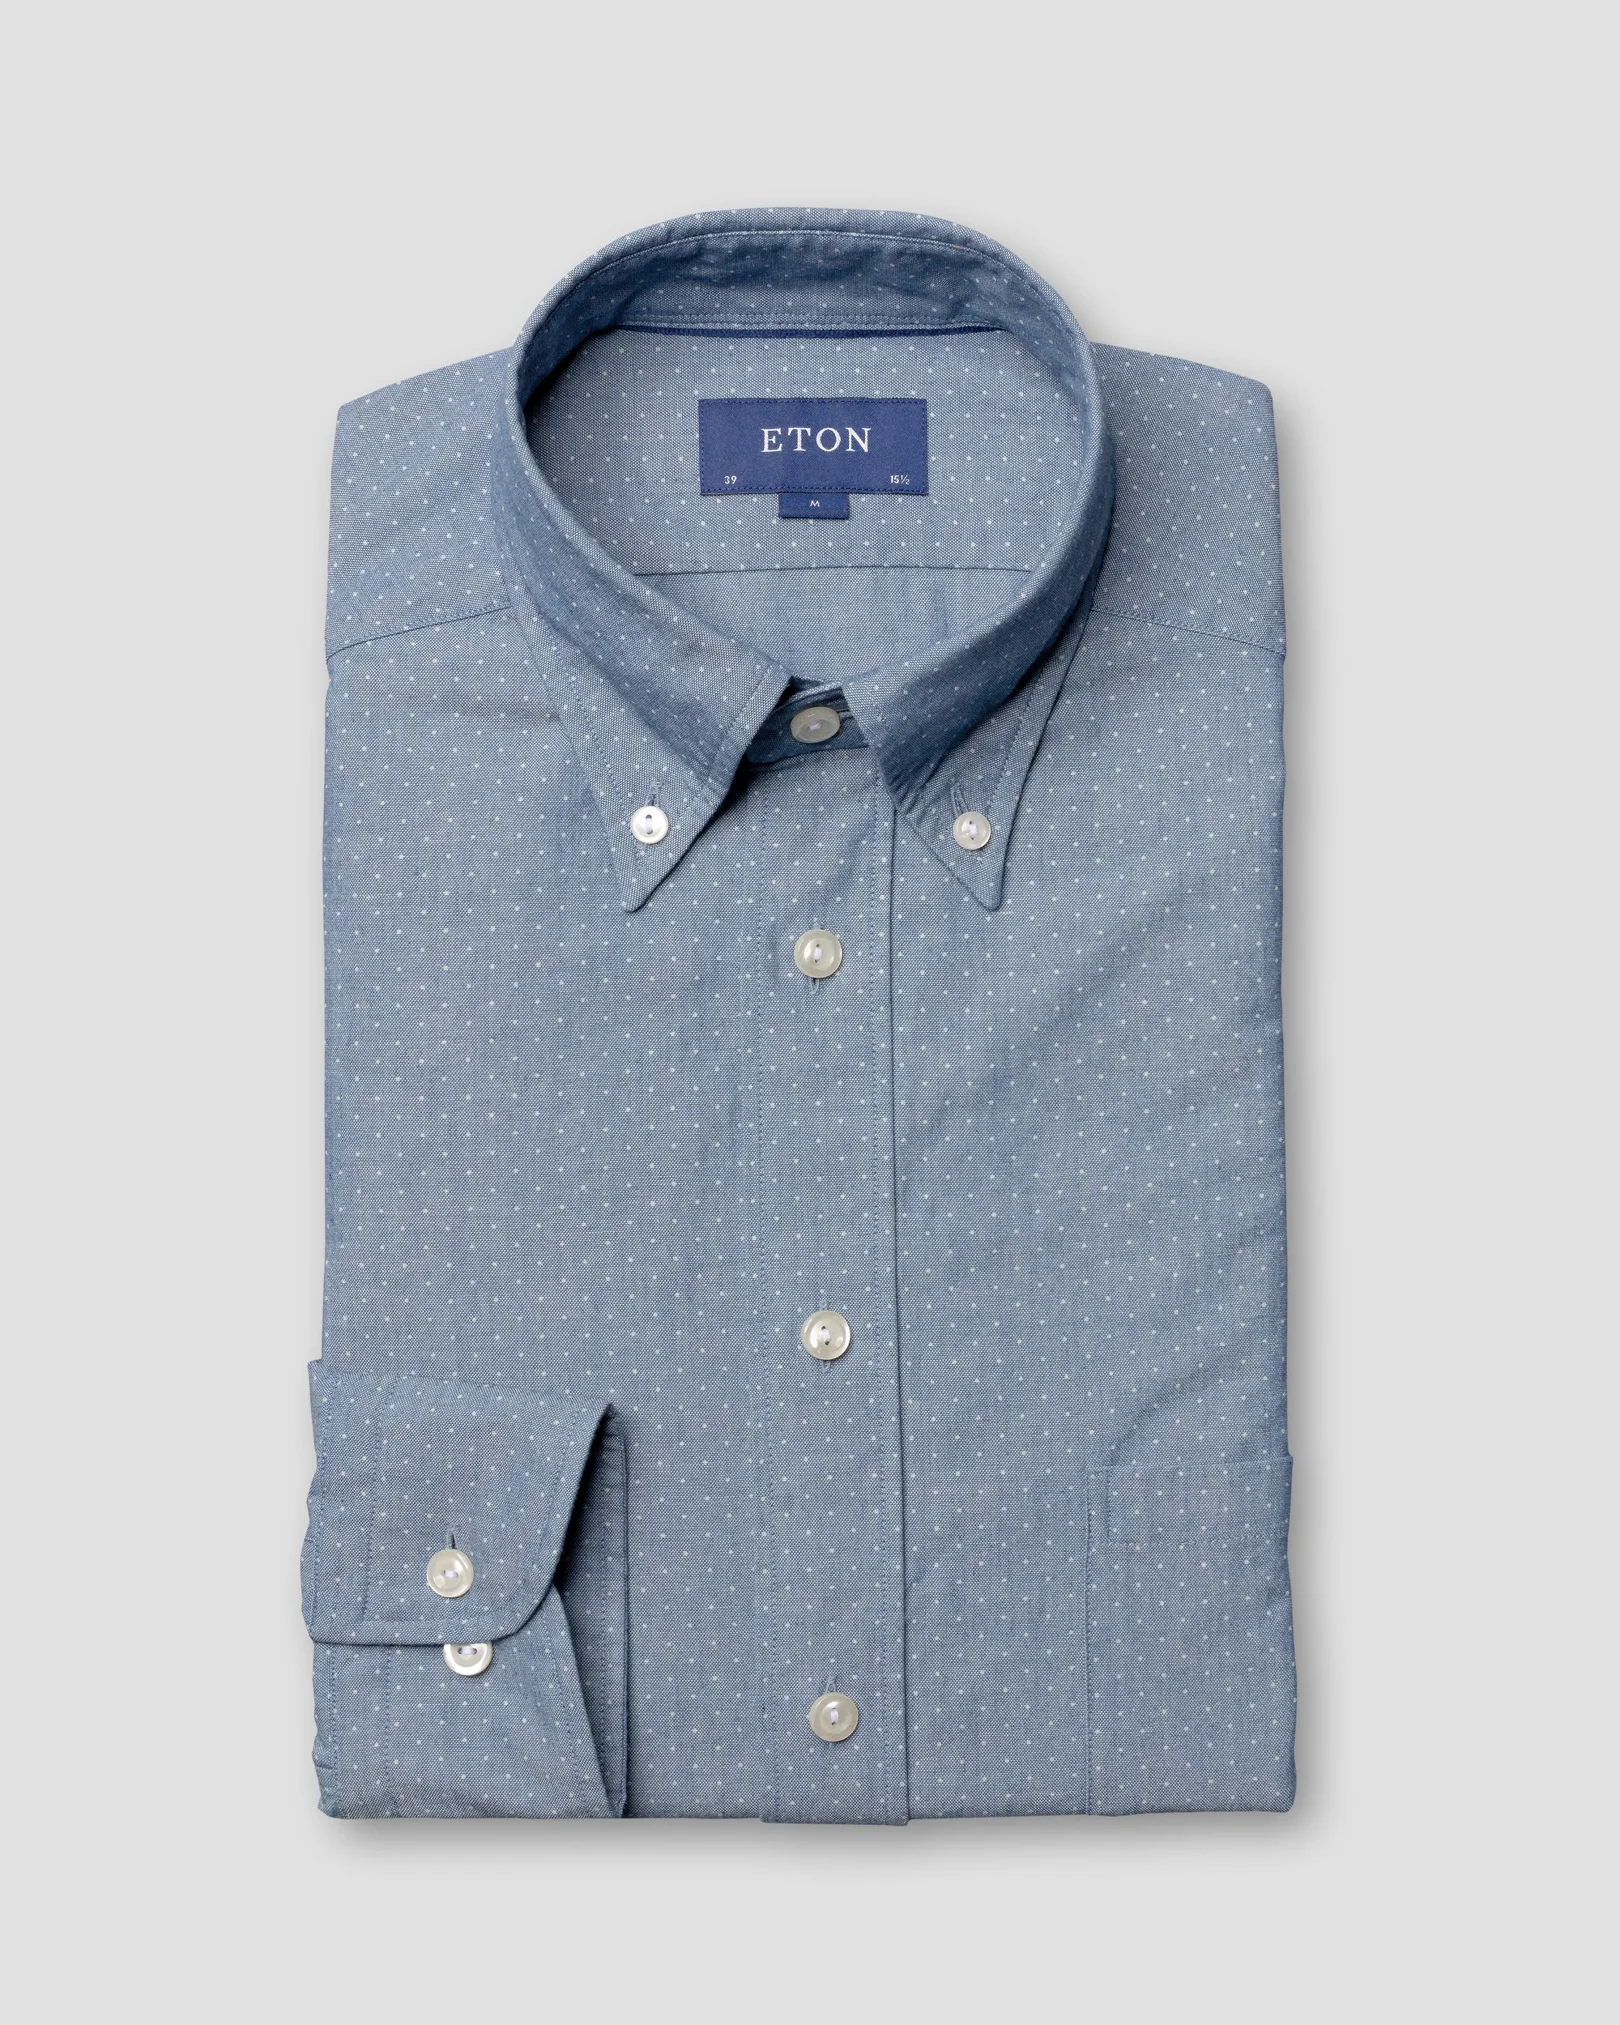 Eton - pin dot indigo shirt